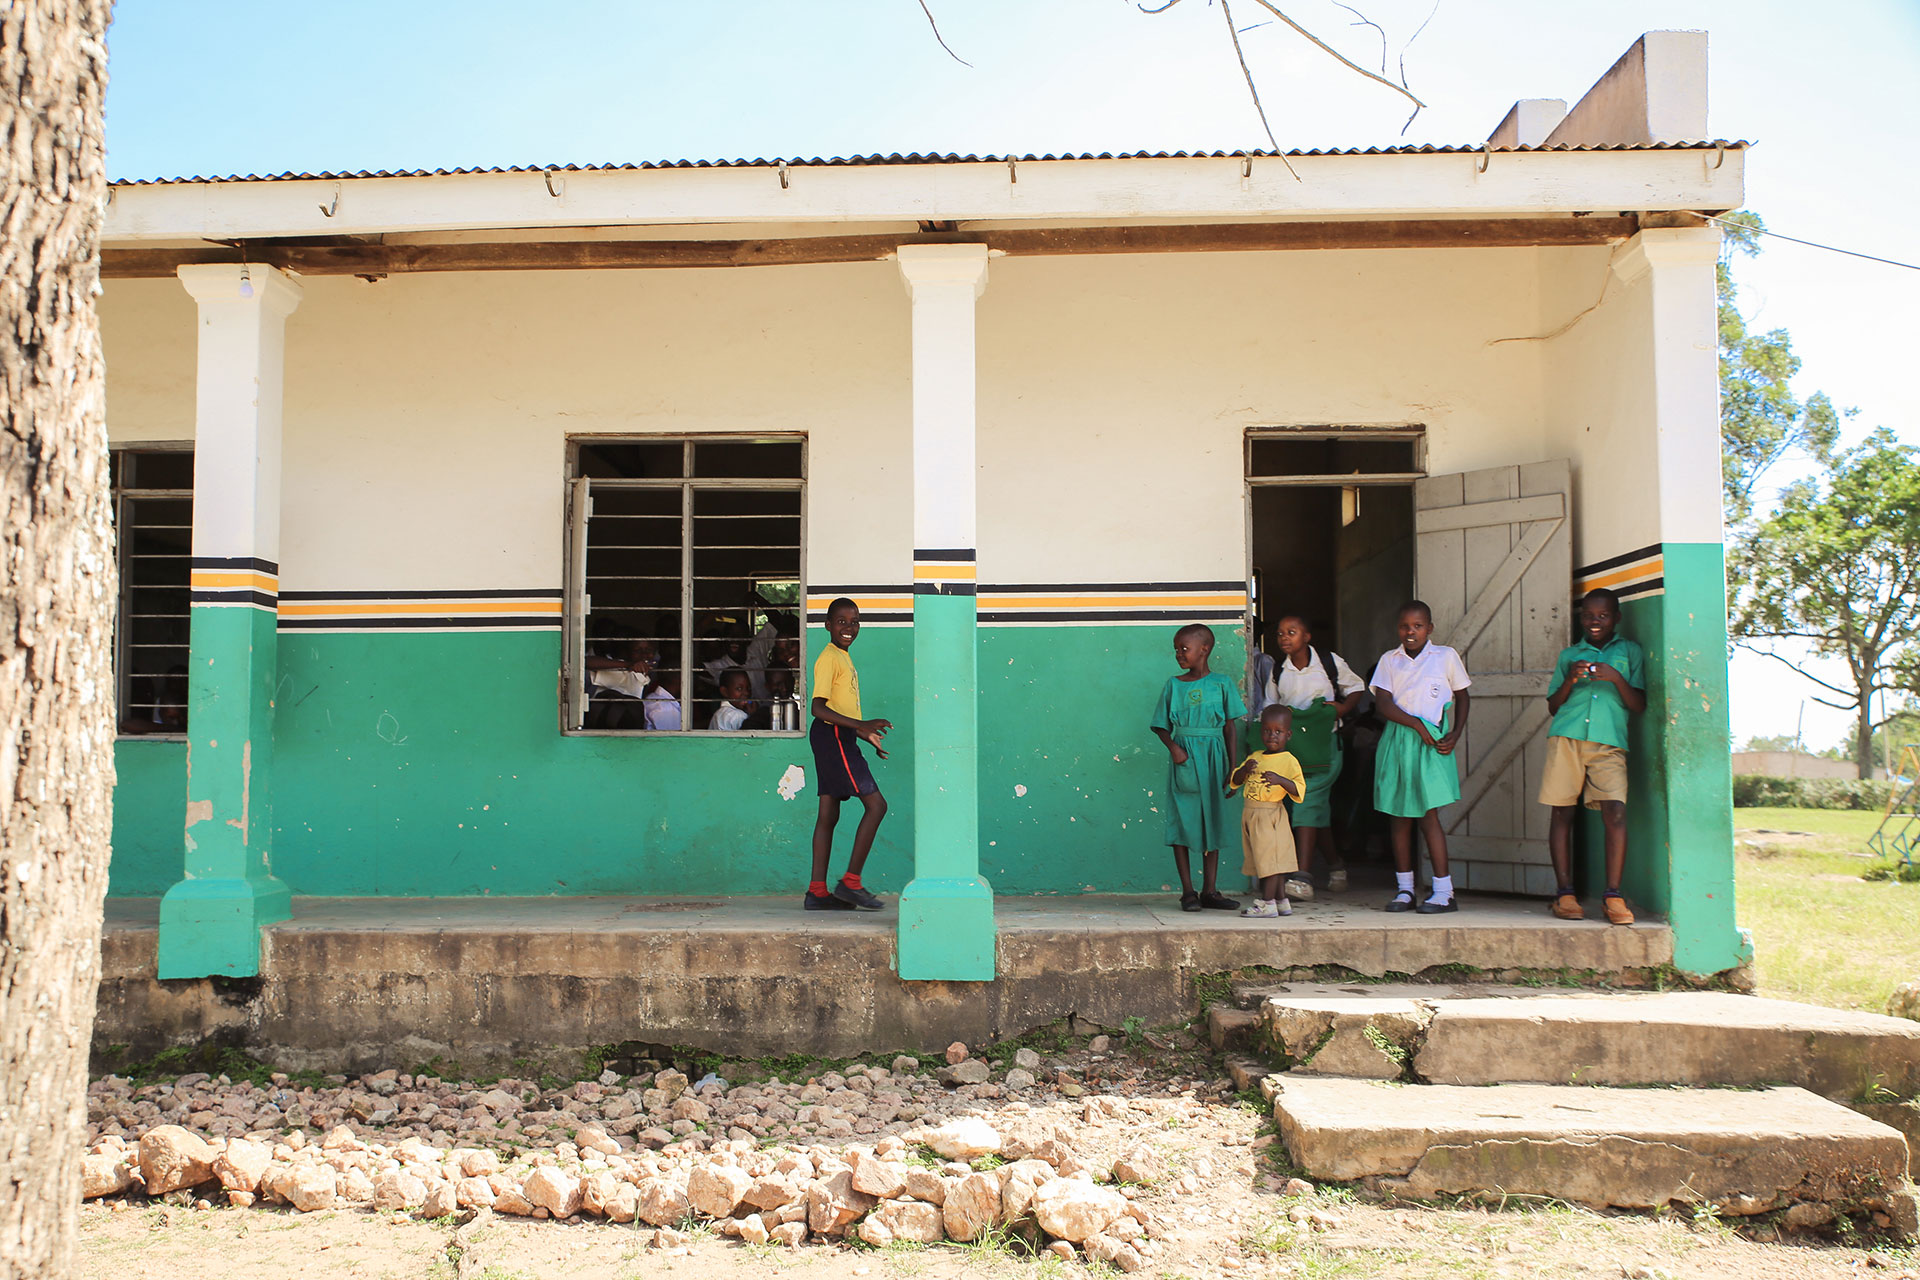 Case Study – Luweero, Uganda